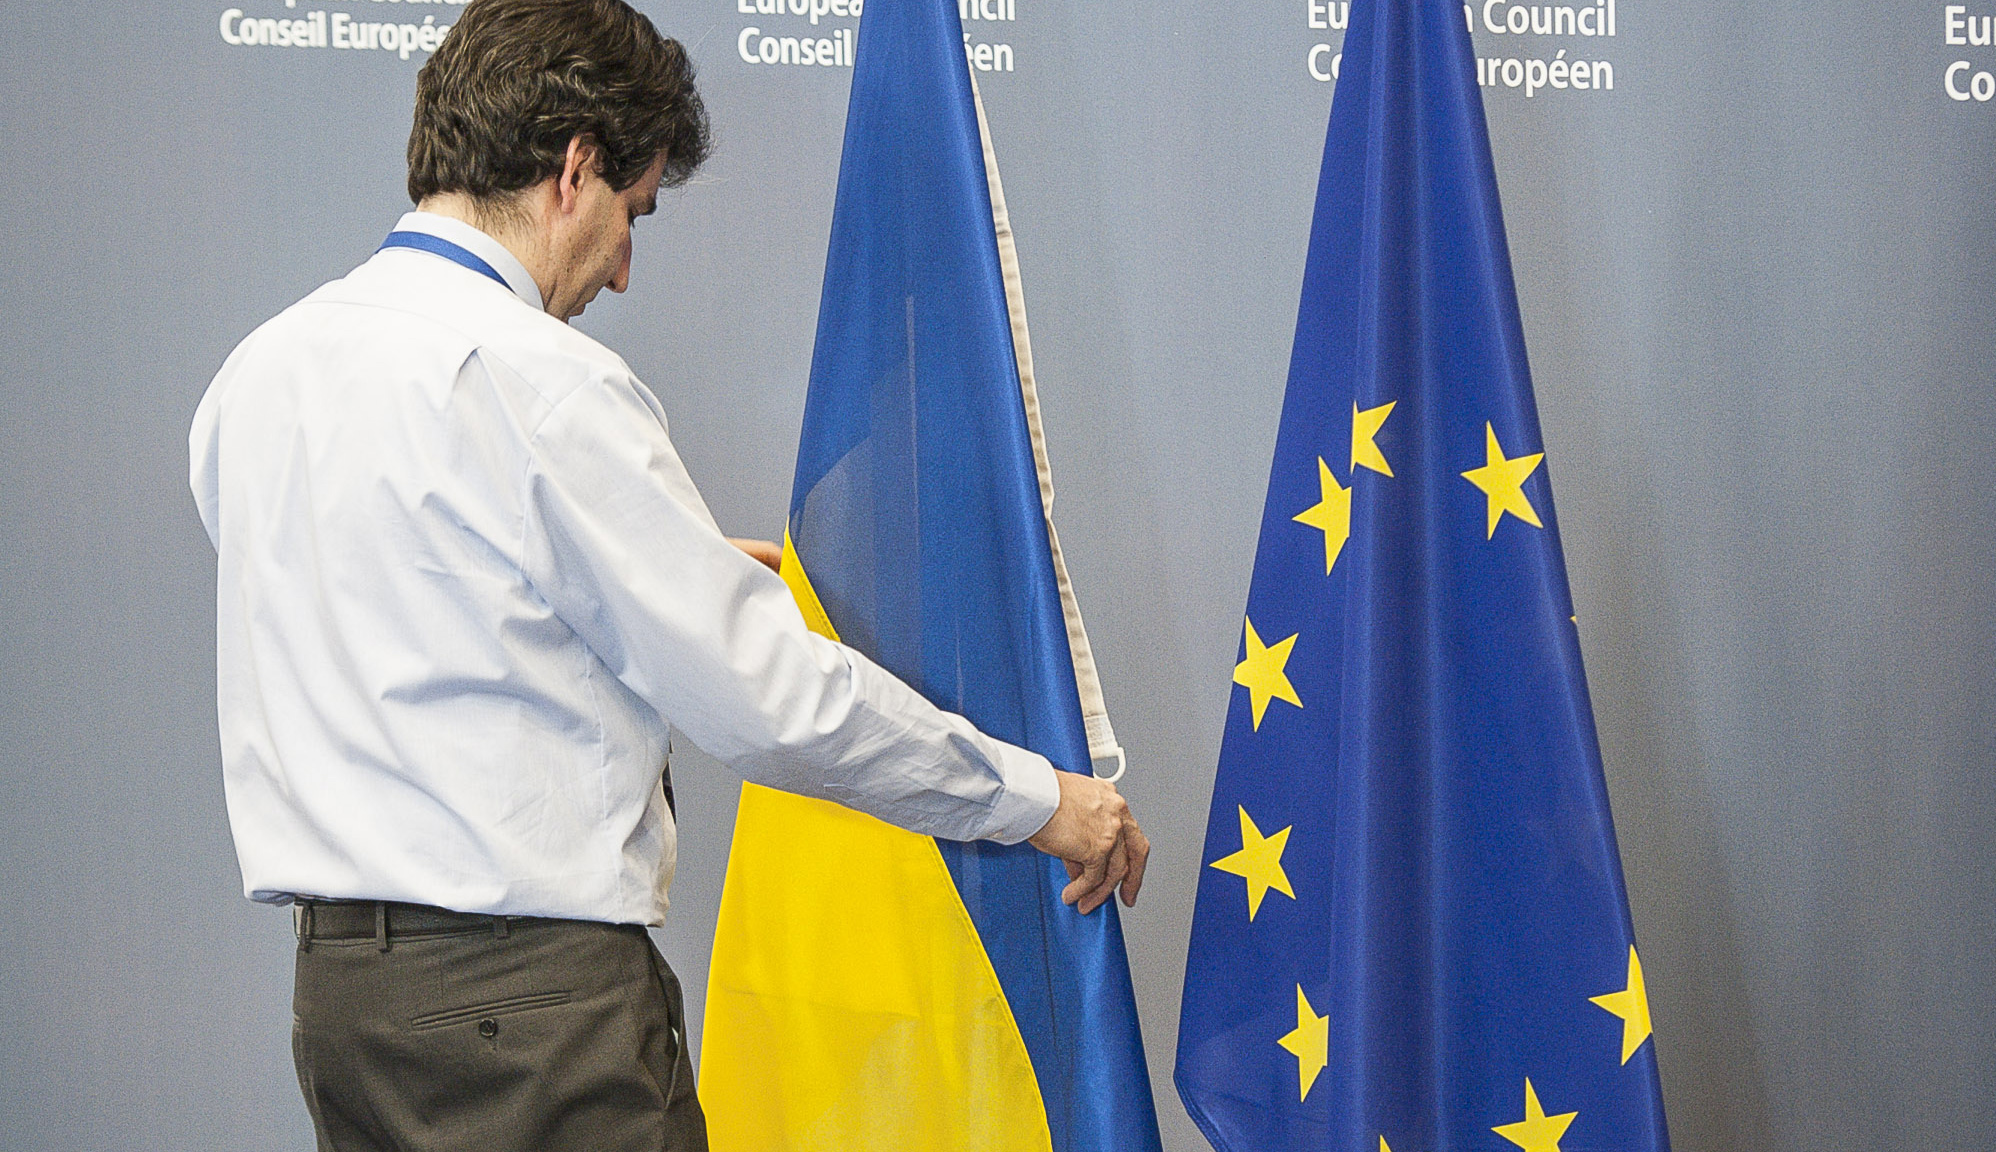 ВАЖНО! Европа поступила подло по отношению к Украине. Это отречение